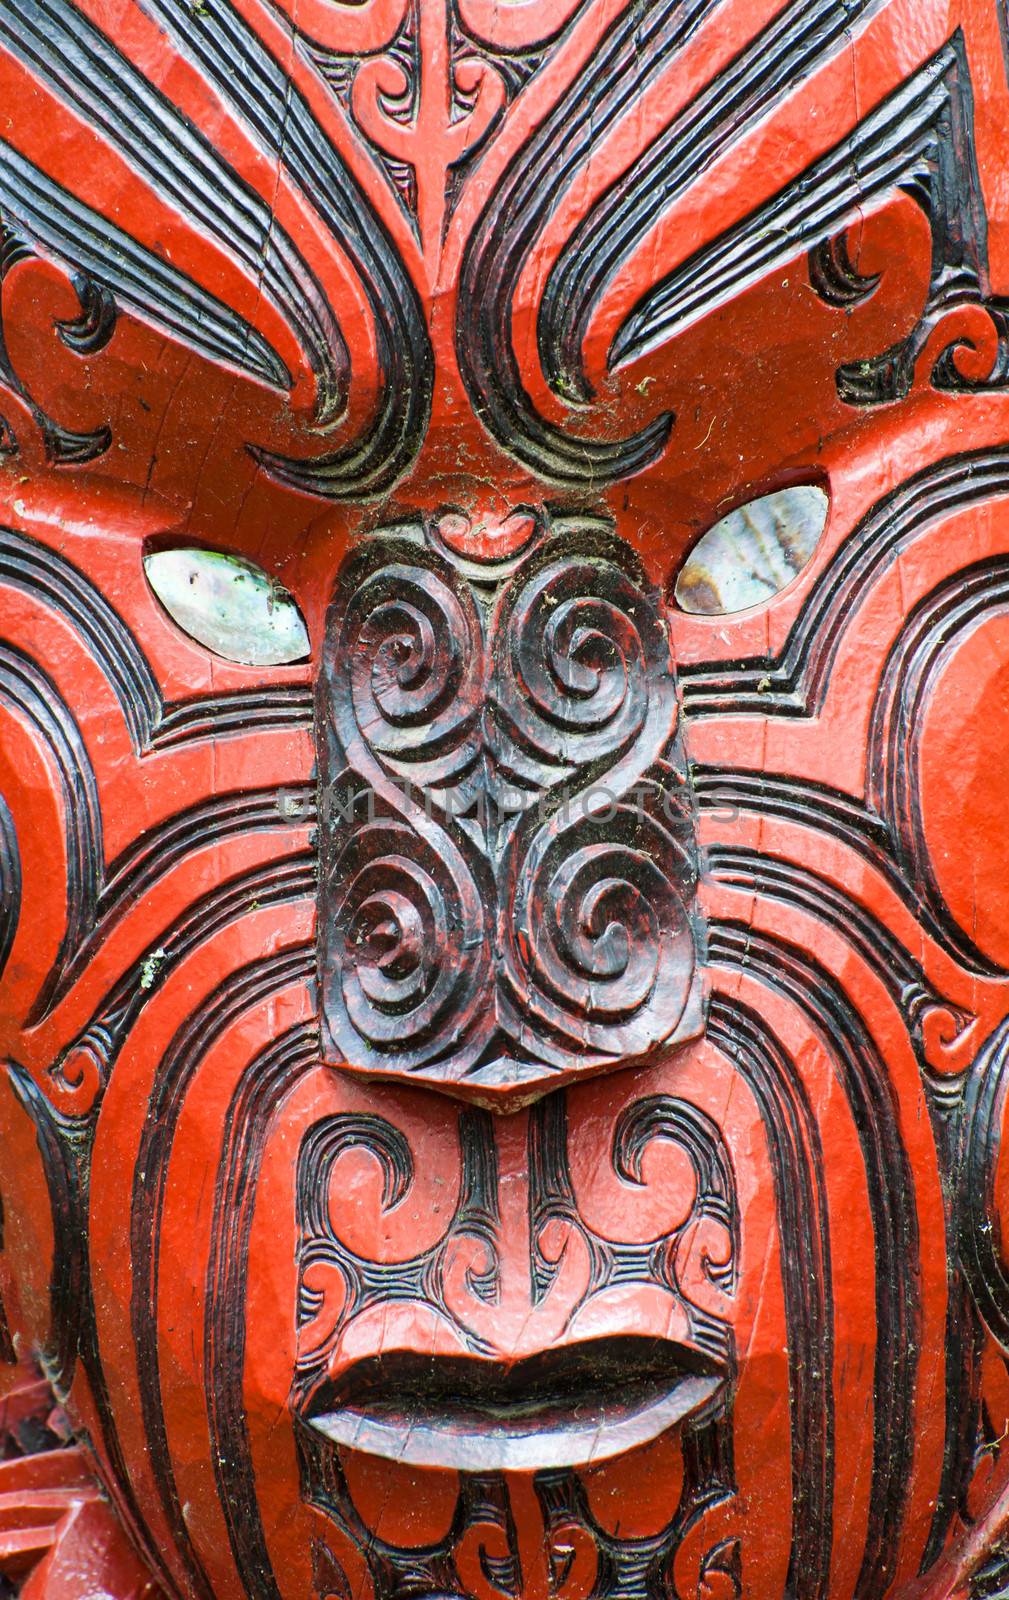  Beautiful maori carving. Rotorua, New Zealand